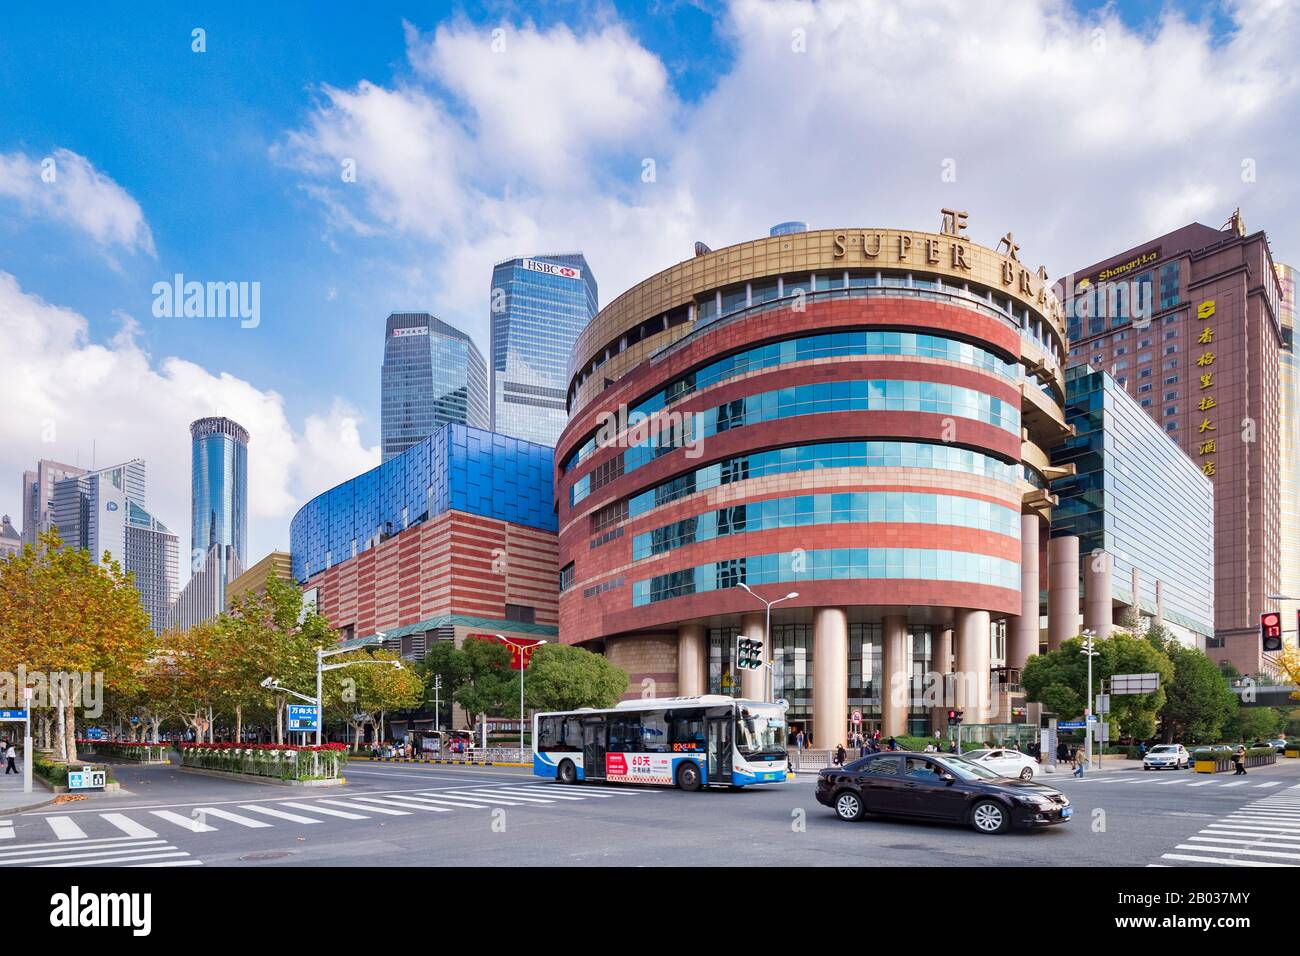 Dezember 2018: Shanghai, China - Super Brand Mall, ein 13-stöckiges Einkaufszentrum unter den modernen Hochhäusern des Pudong-Viertels. Stockfoto